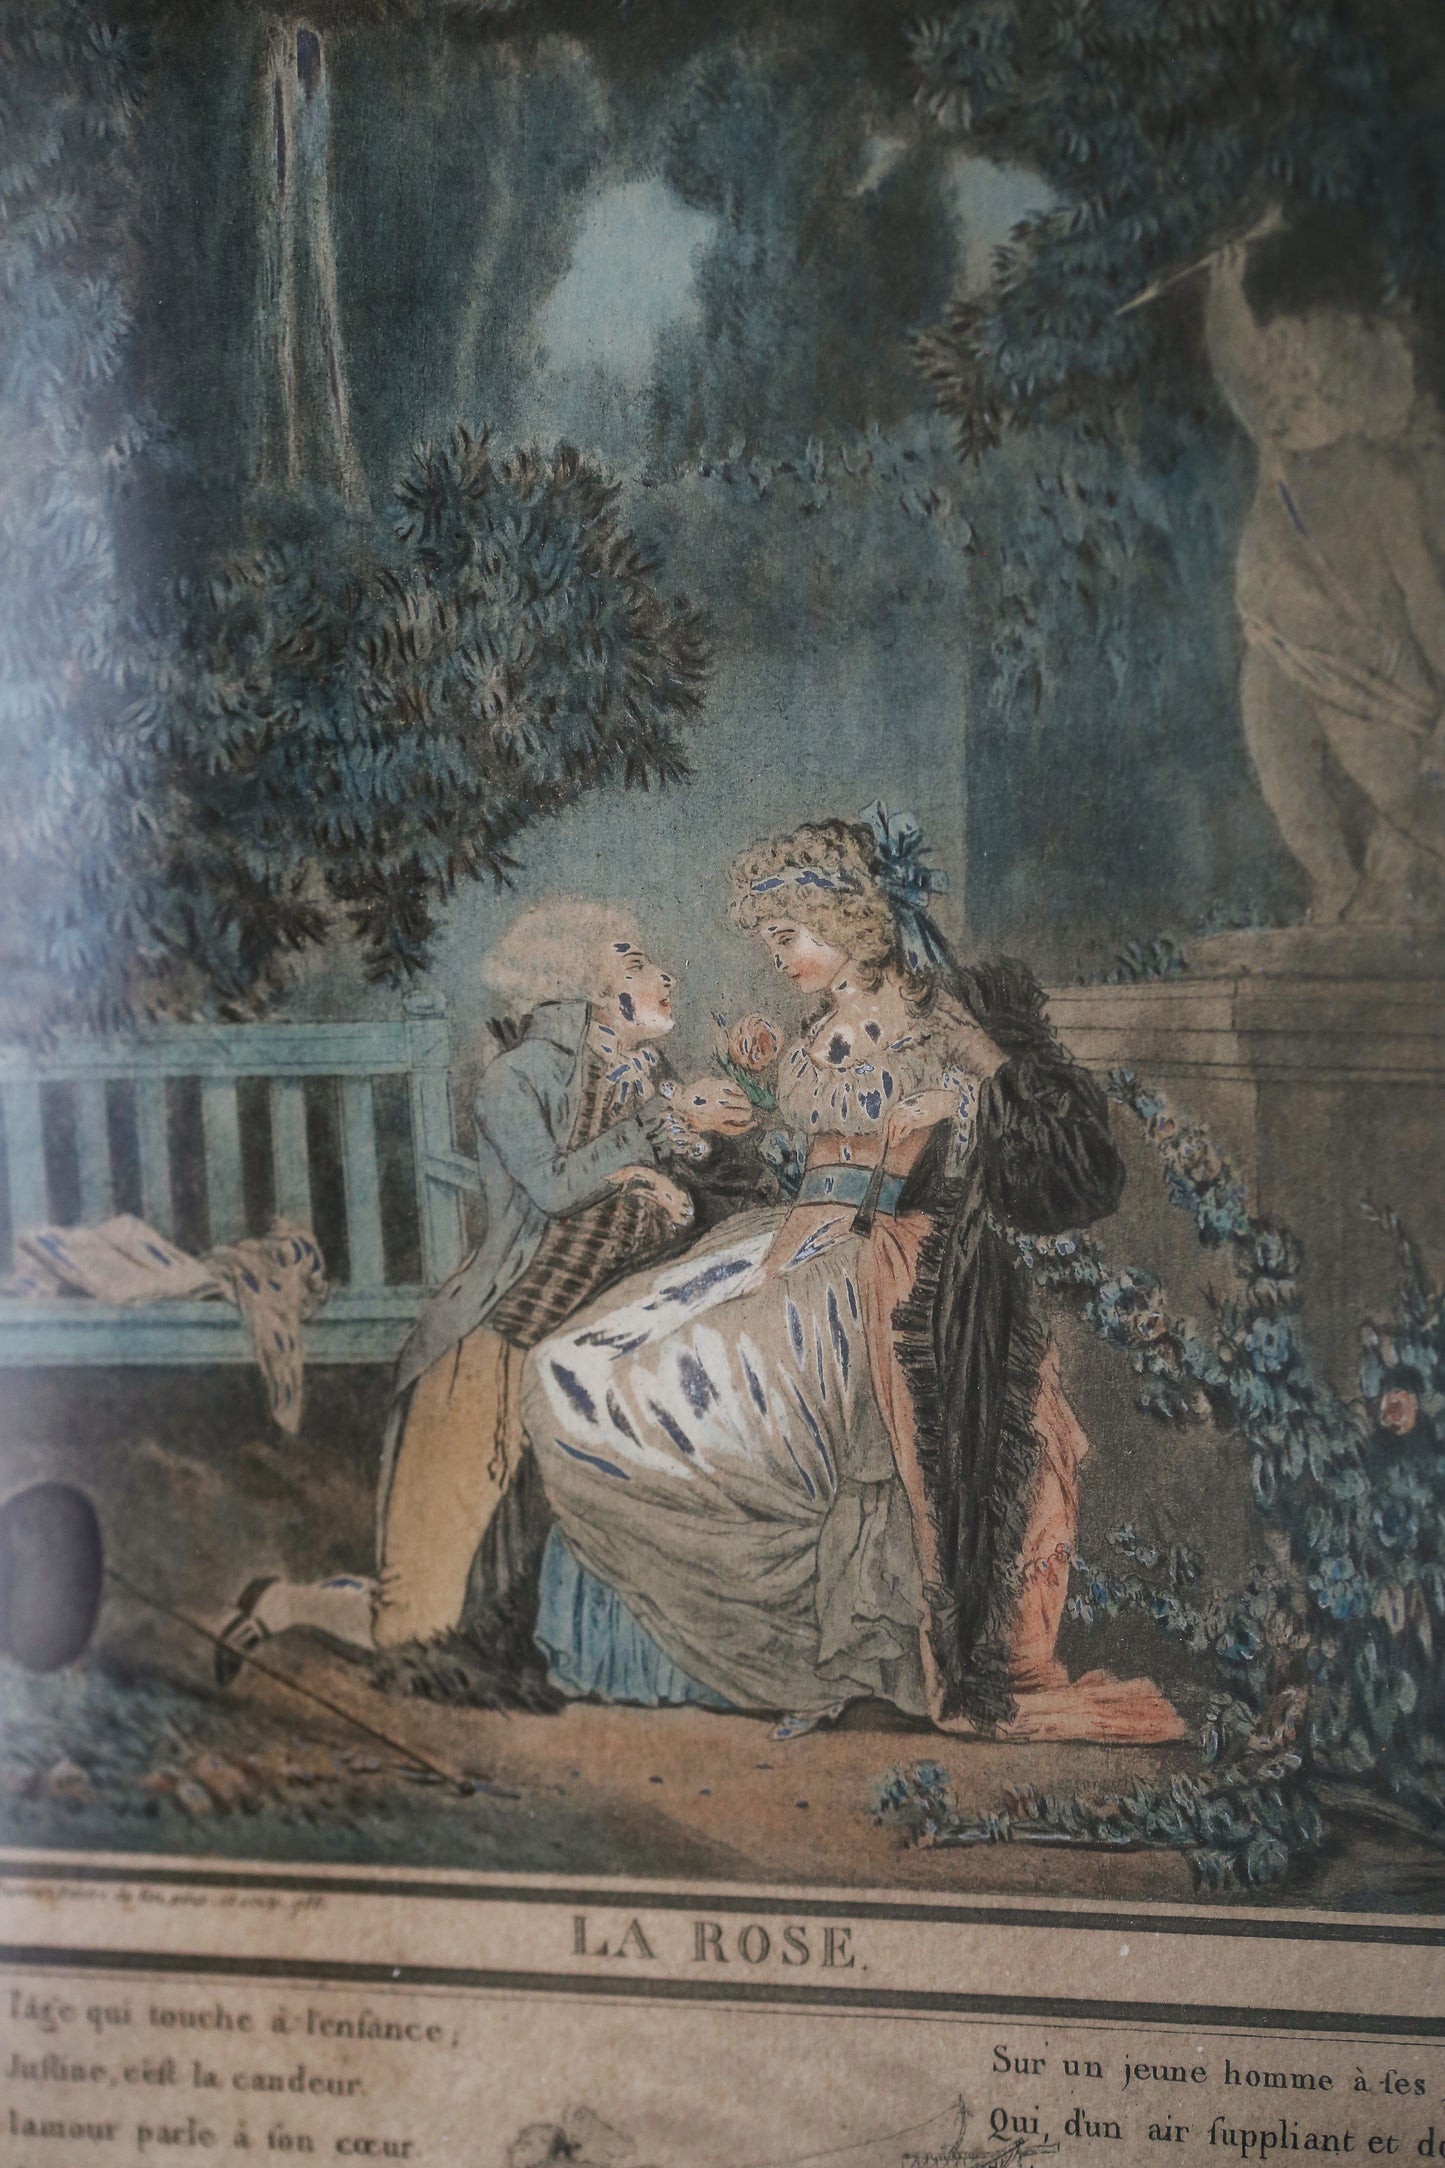 Gravure du XVIIIe siècle : "La rose" de Parny représentée par Debucourt à la manière anglaise